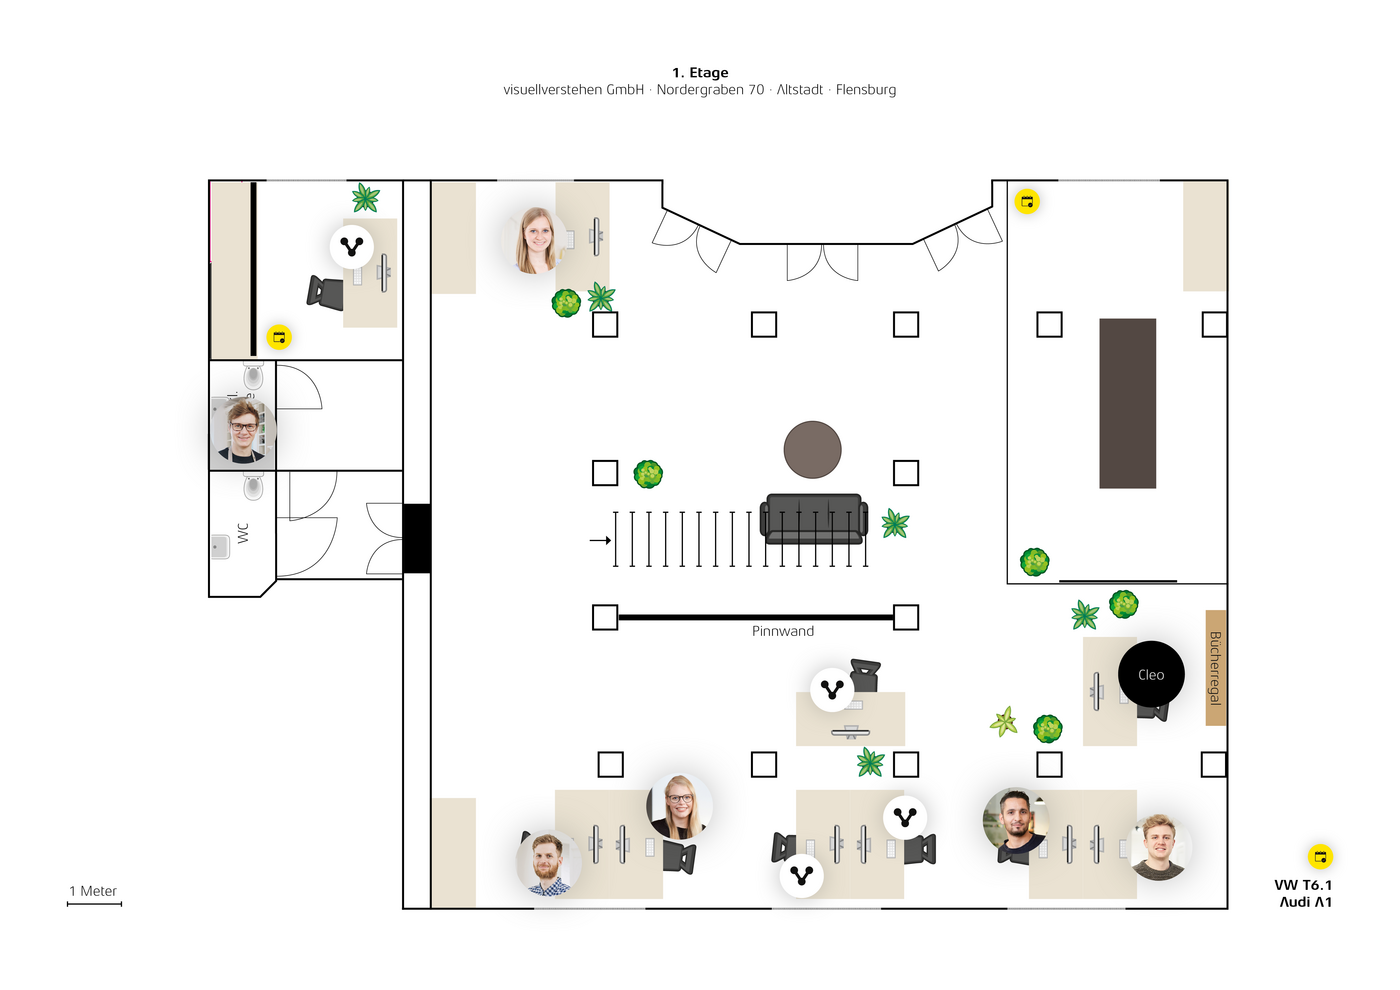 Ein Grundriss der Büroräume von visuellverstehen, in dem aufgezeigt wird, welche Mitarbeitenden wo sitzen, und bei welchen Arbeitsplätzen es sich um Shared Desks handelt.